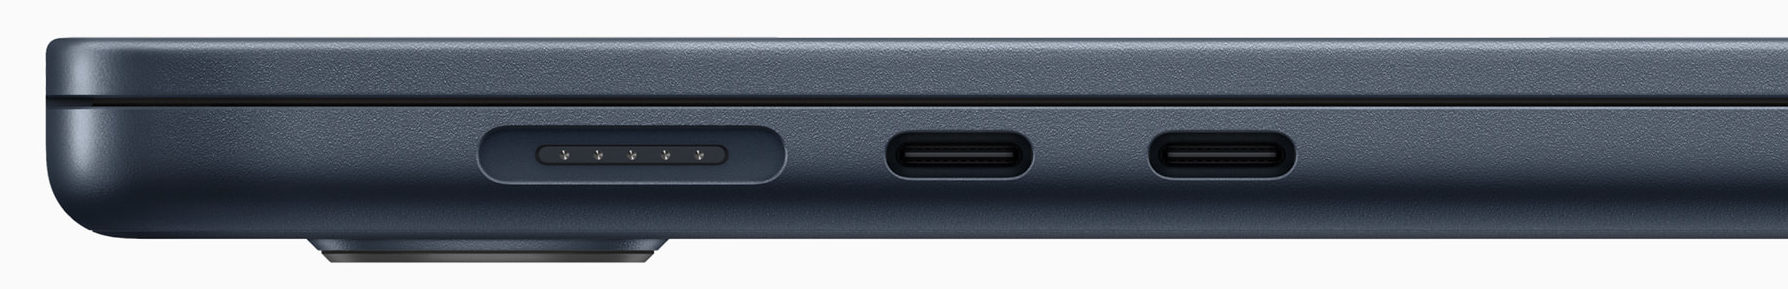 Detalle de puertos en MacBook Air de 15 pulgadas: Dos Thunderbolt / USB 4 y puerto de carga Magsafe